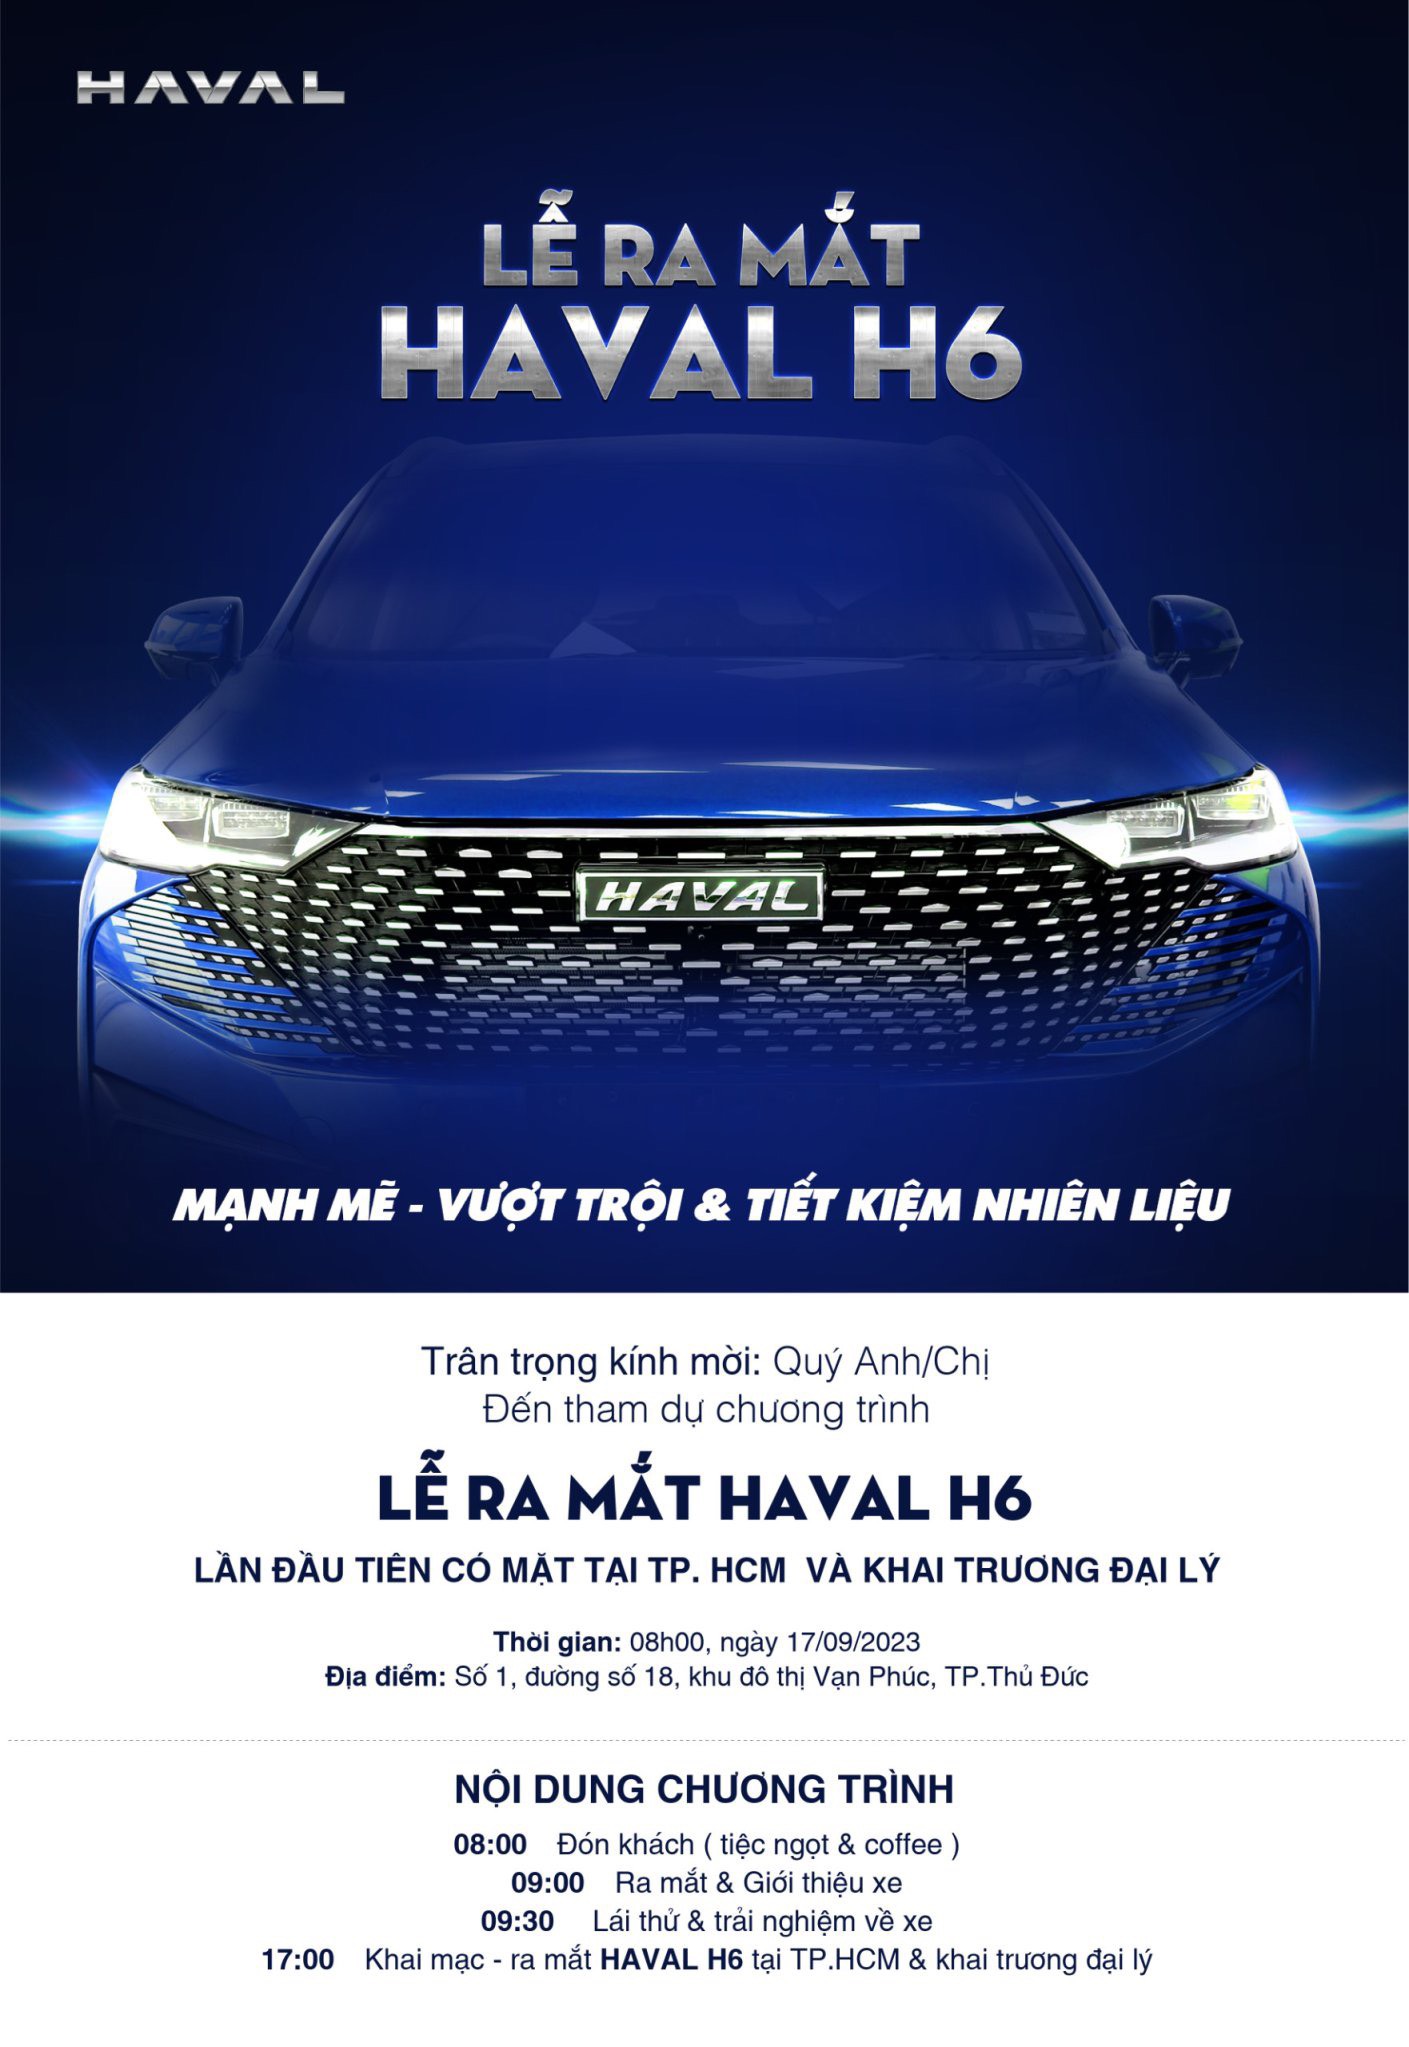 Hot 17/09 này, Haval Thủ Đức chính thức tổ chức sự kiện thử mẫu Haval H6 Hybrid